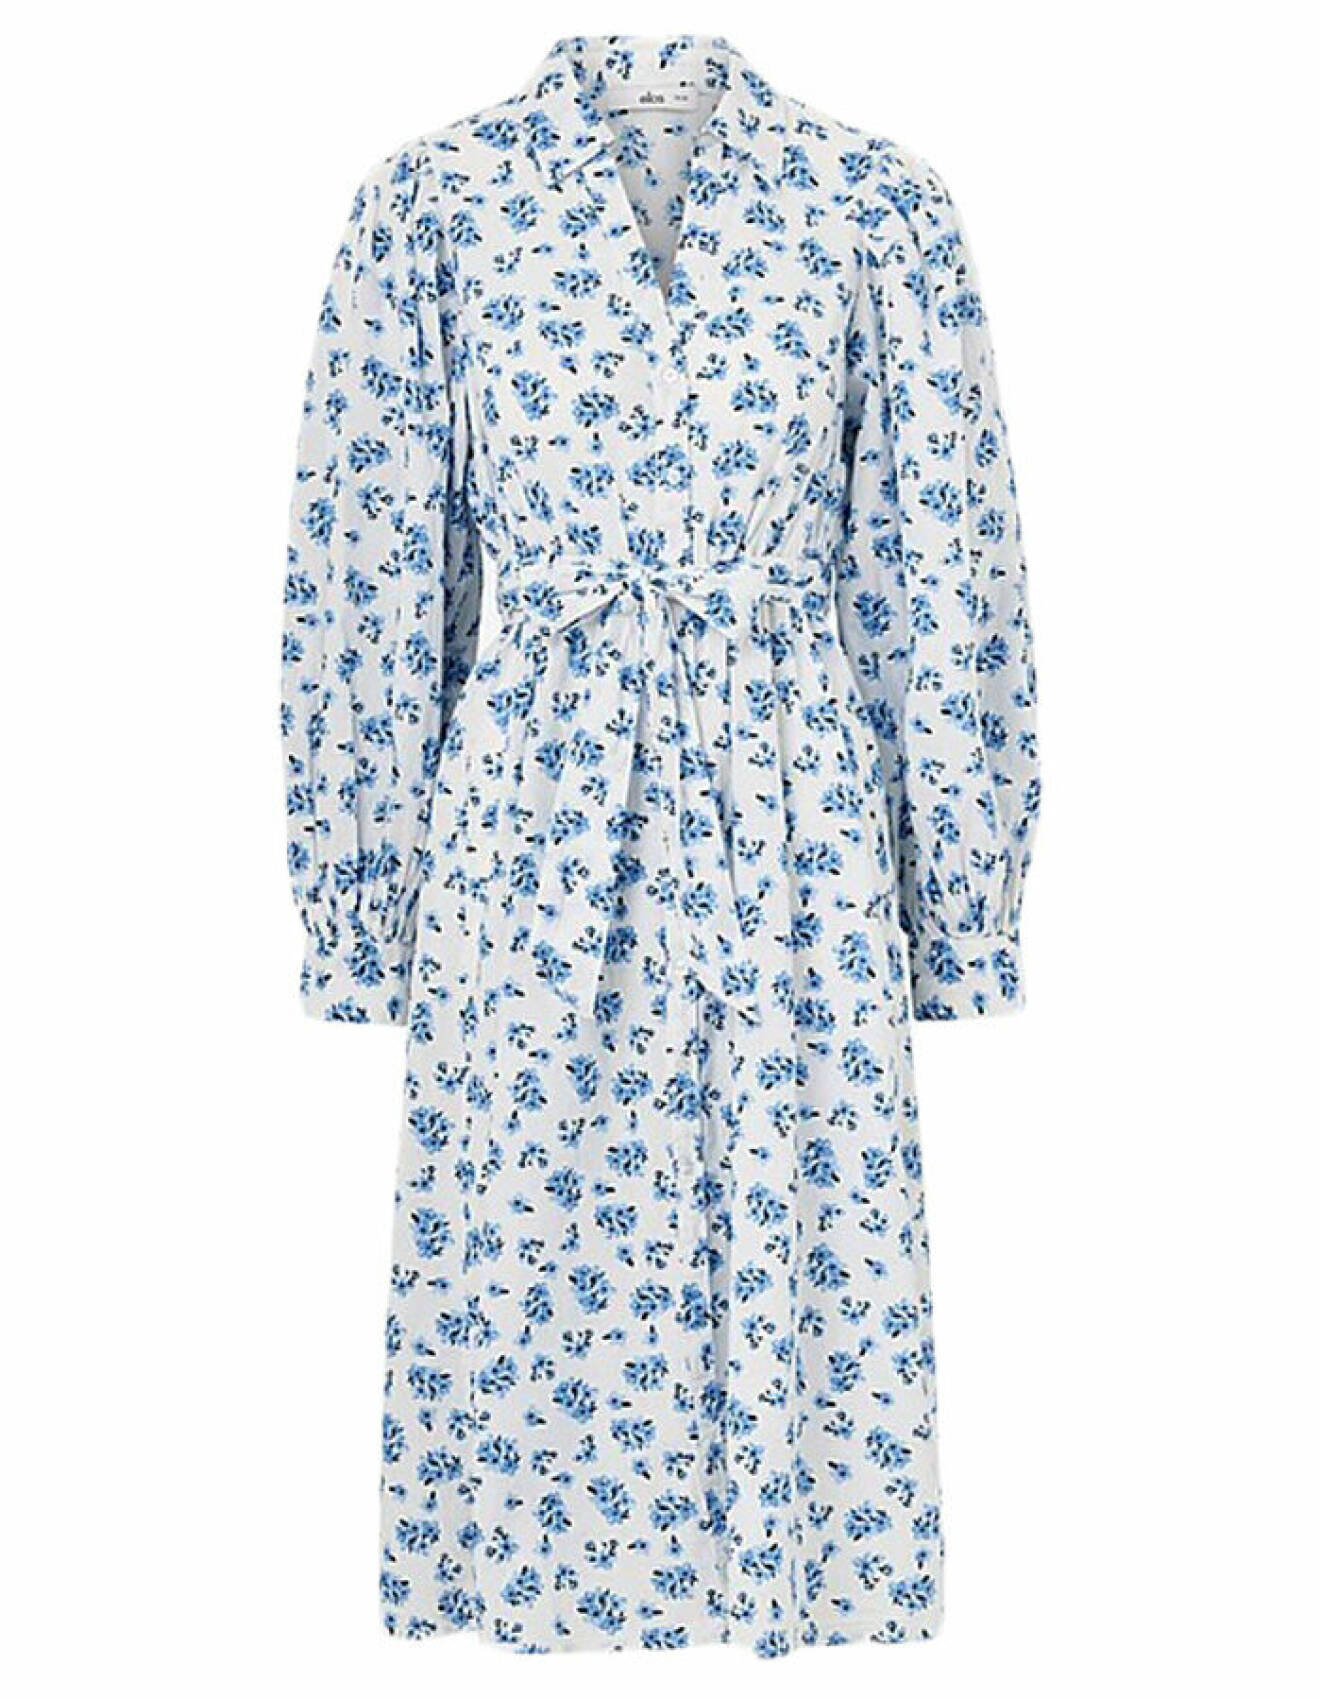 blommig skjortklänning i vitt och blått från ellos för klädkoden kavaj